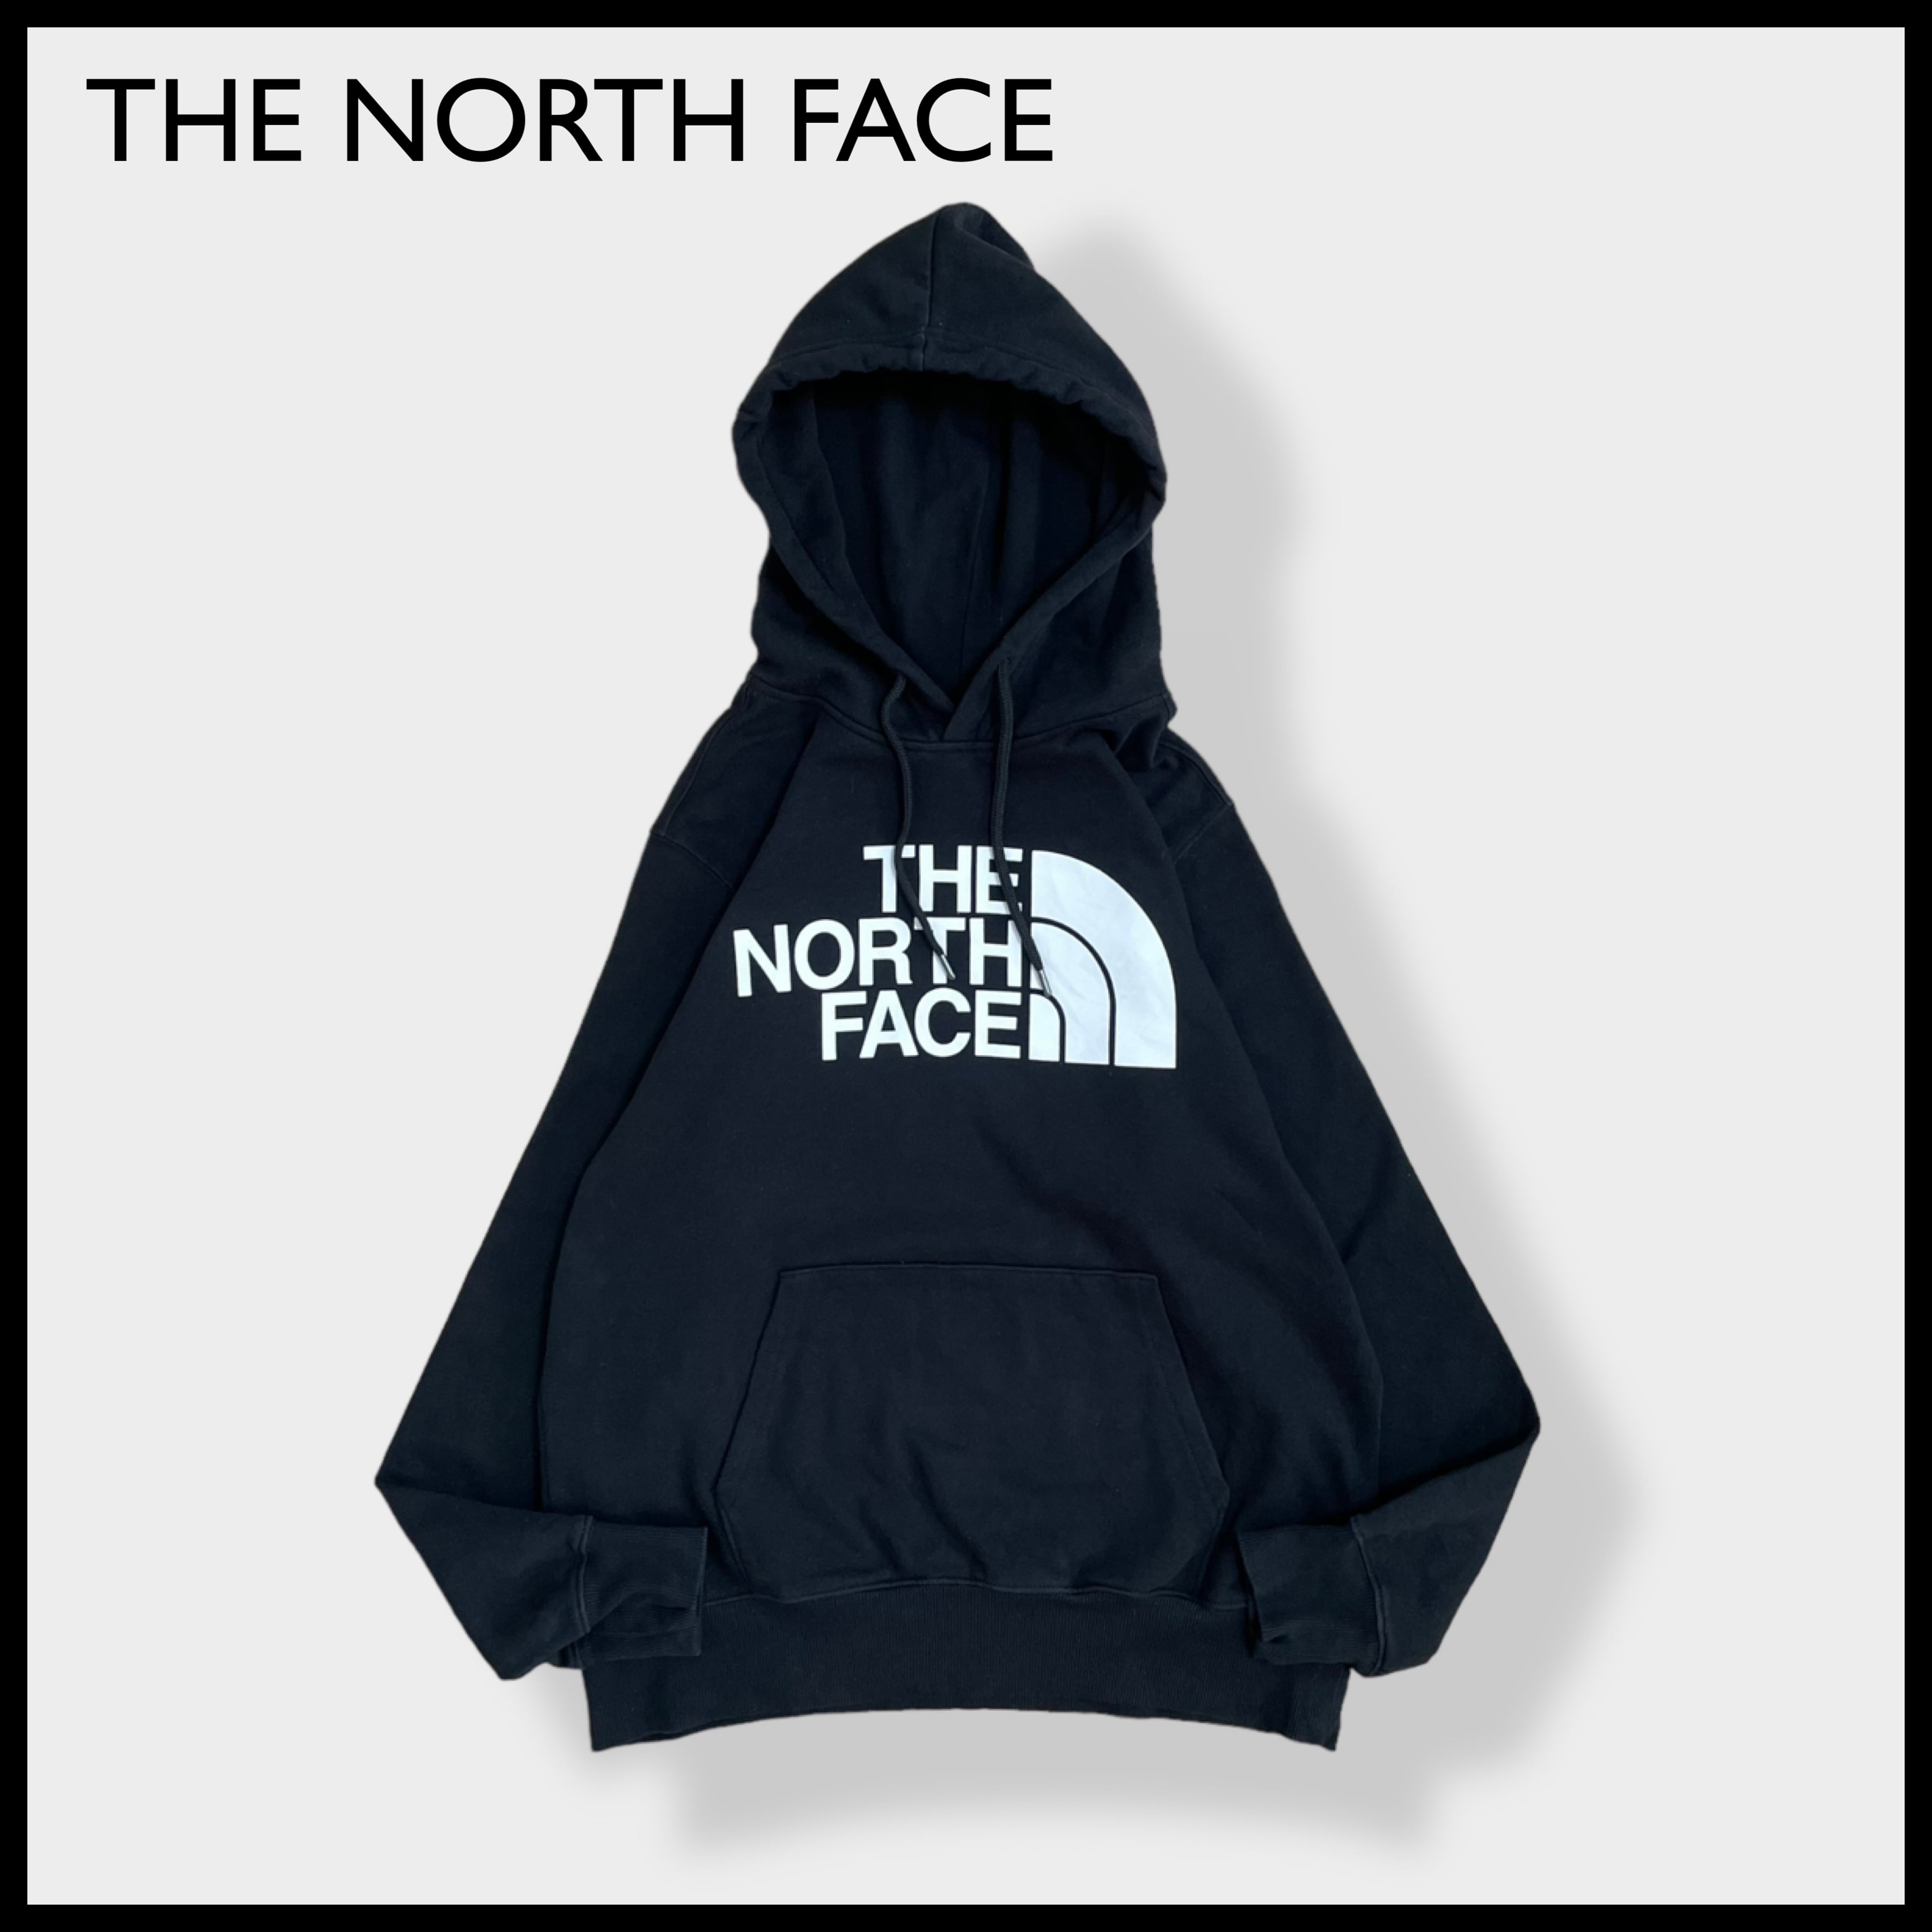 THE NORTH FACE ロゴプリント パーカー スウェット フーディ - パーカー